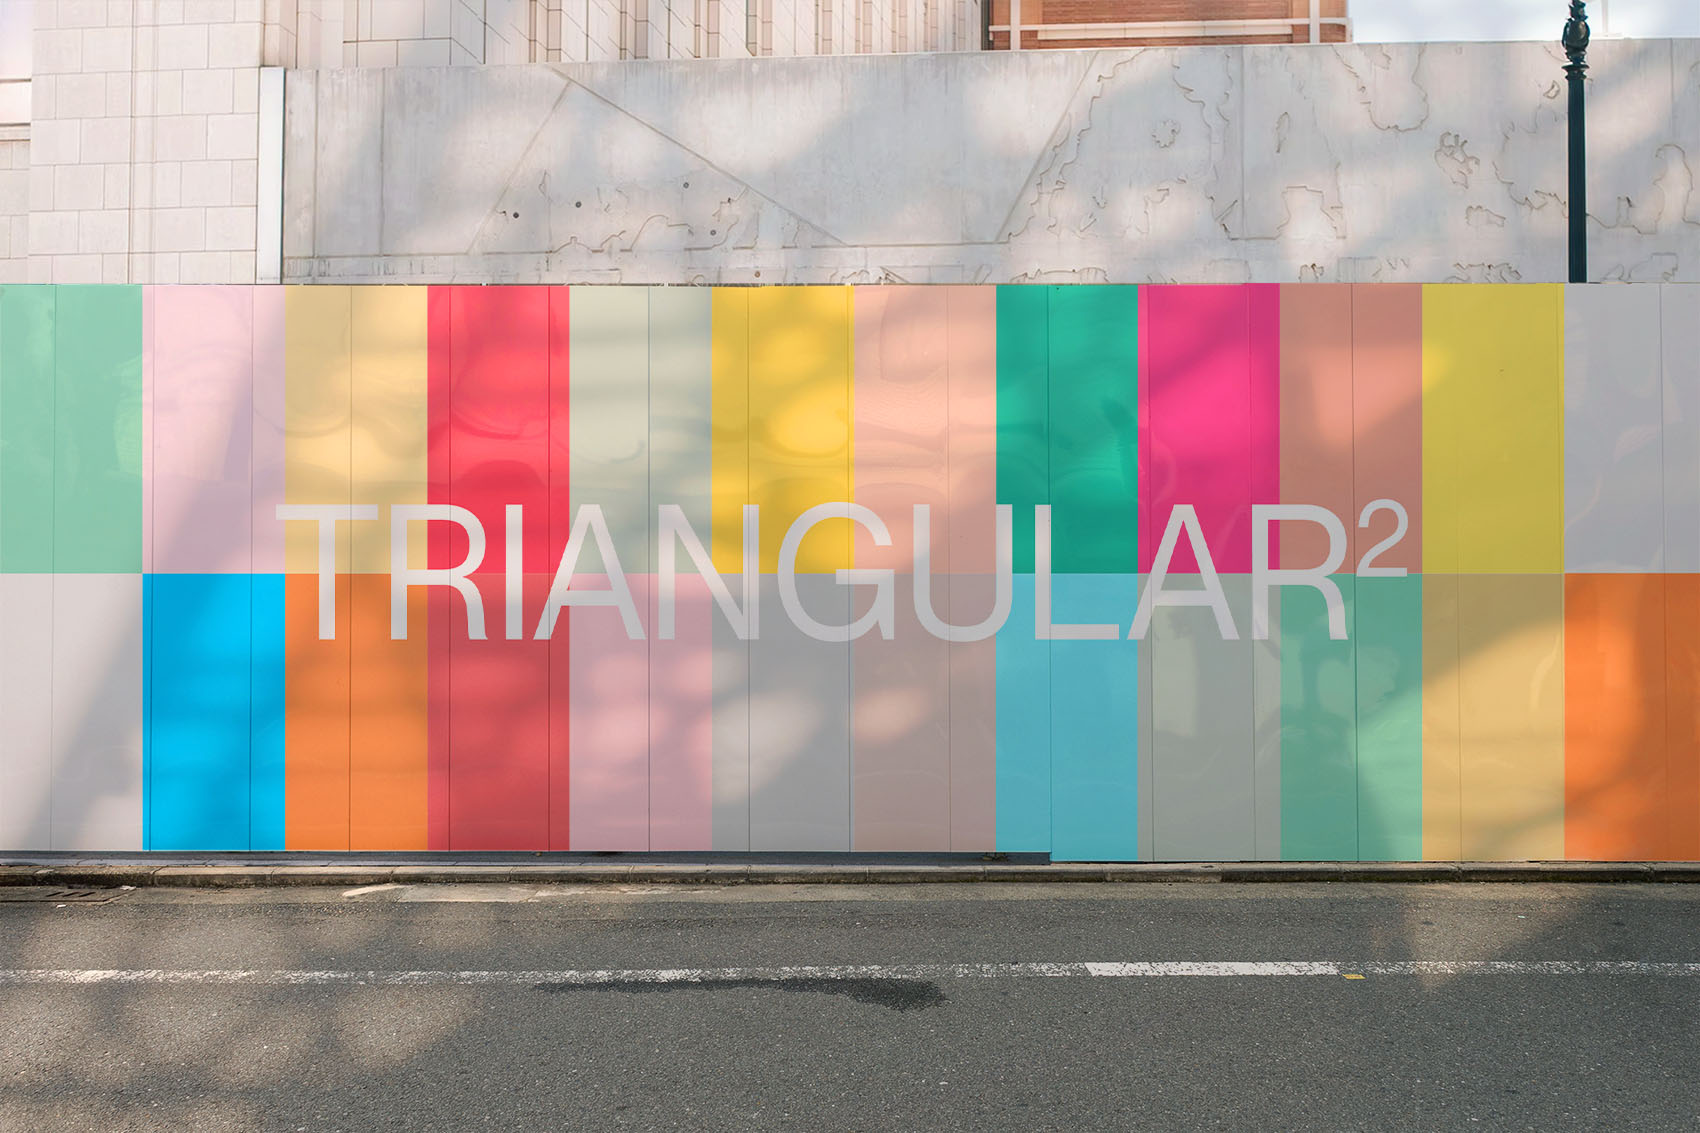 Proyecto de diseño gráfico para el espacio de debate Triangular promovido por el Colegio de Diseñadores de Interior de la Comunidad Valenciana